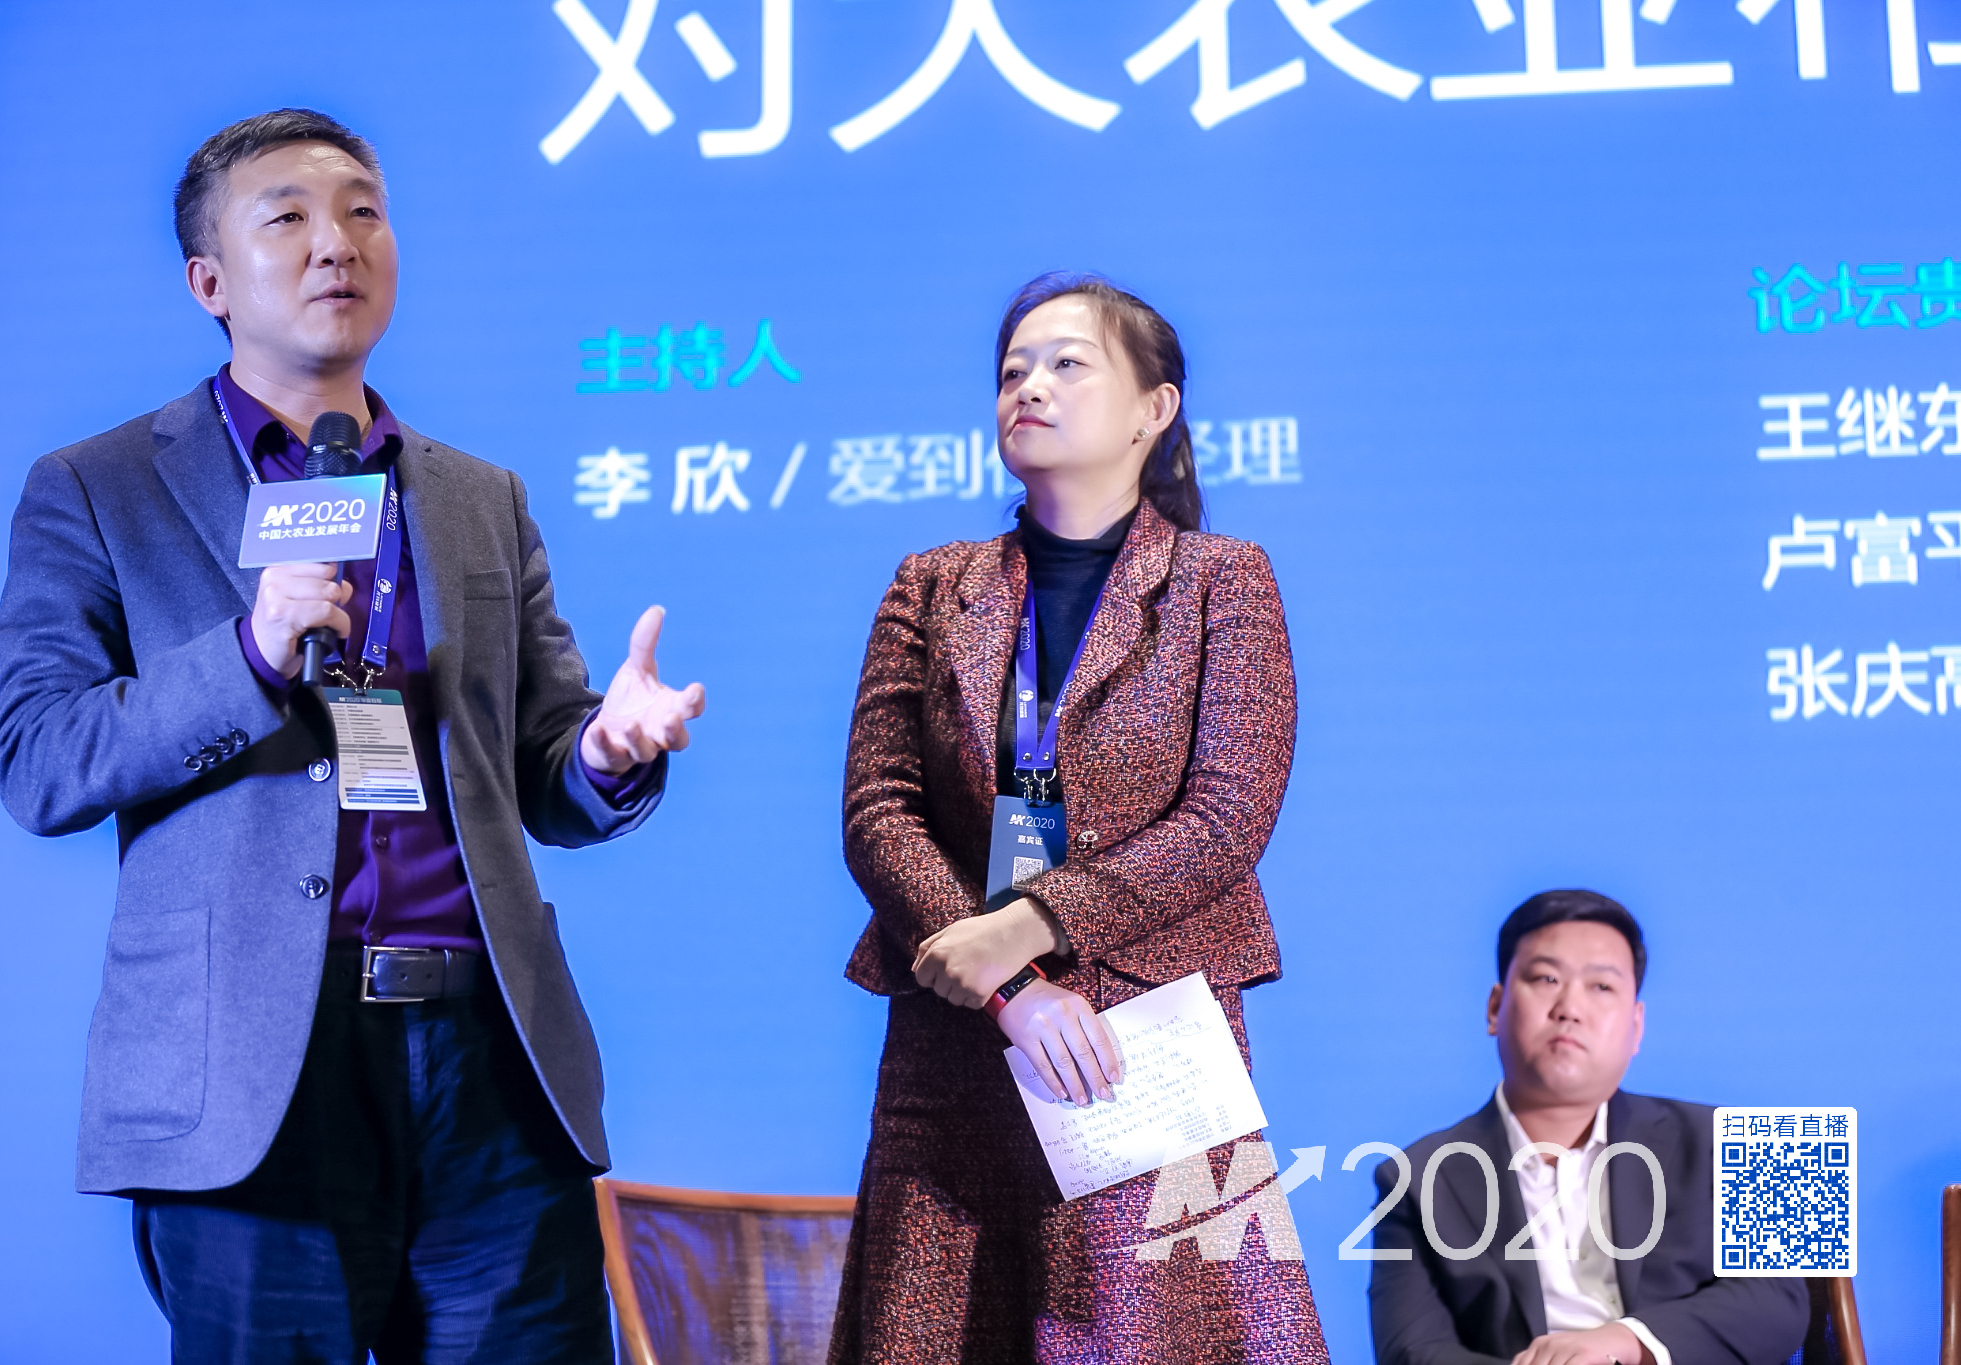 铁骑力士集团运营总裁邓先峰先生分享533项目管理经验